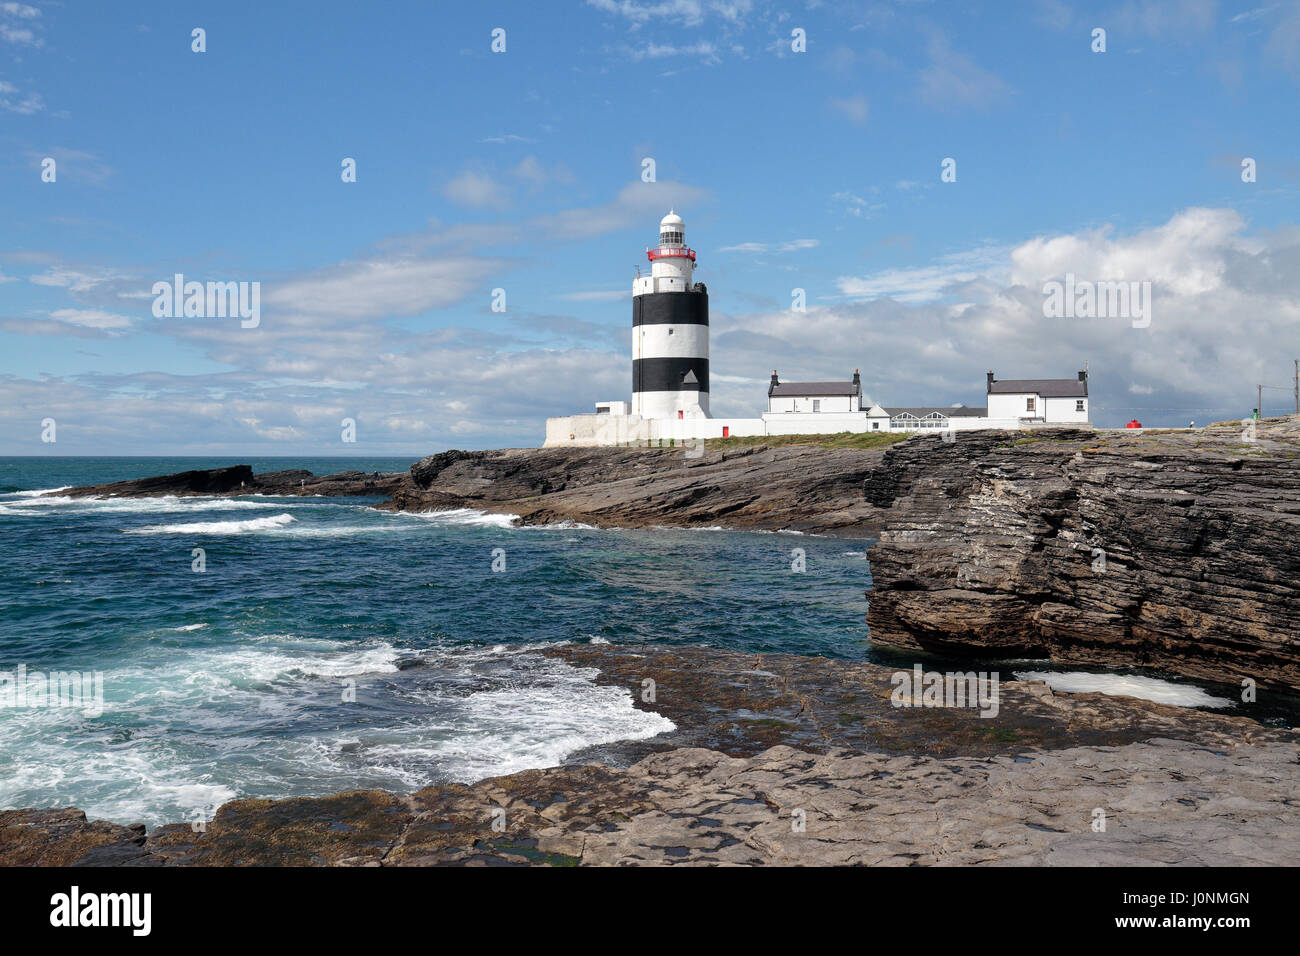 Le crochet phare sur la péninsule de Hook, Co Wexford, Irlande. Banque D'Images